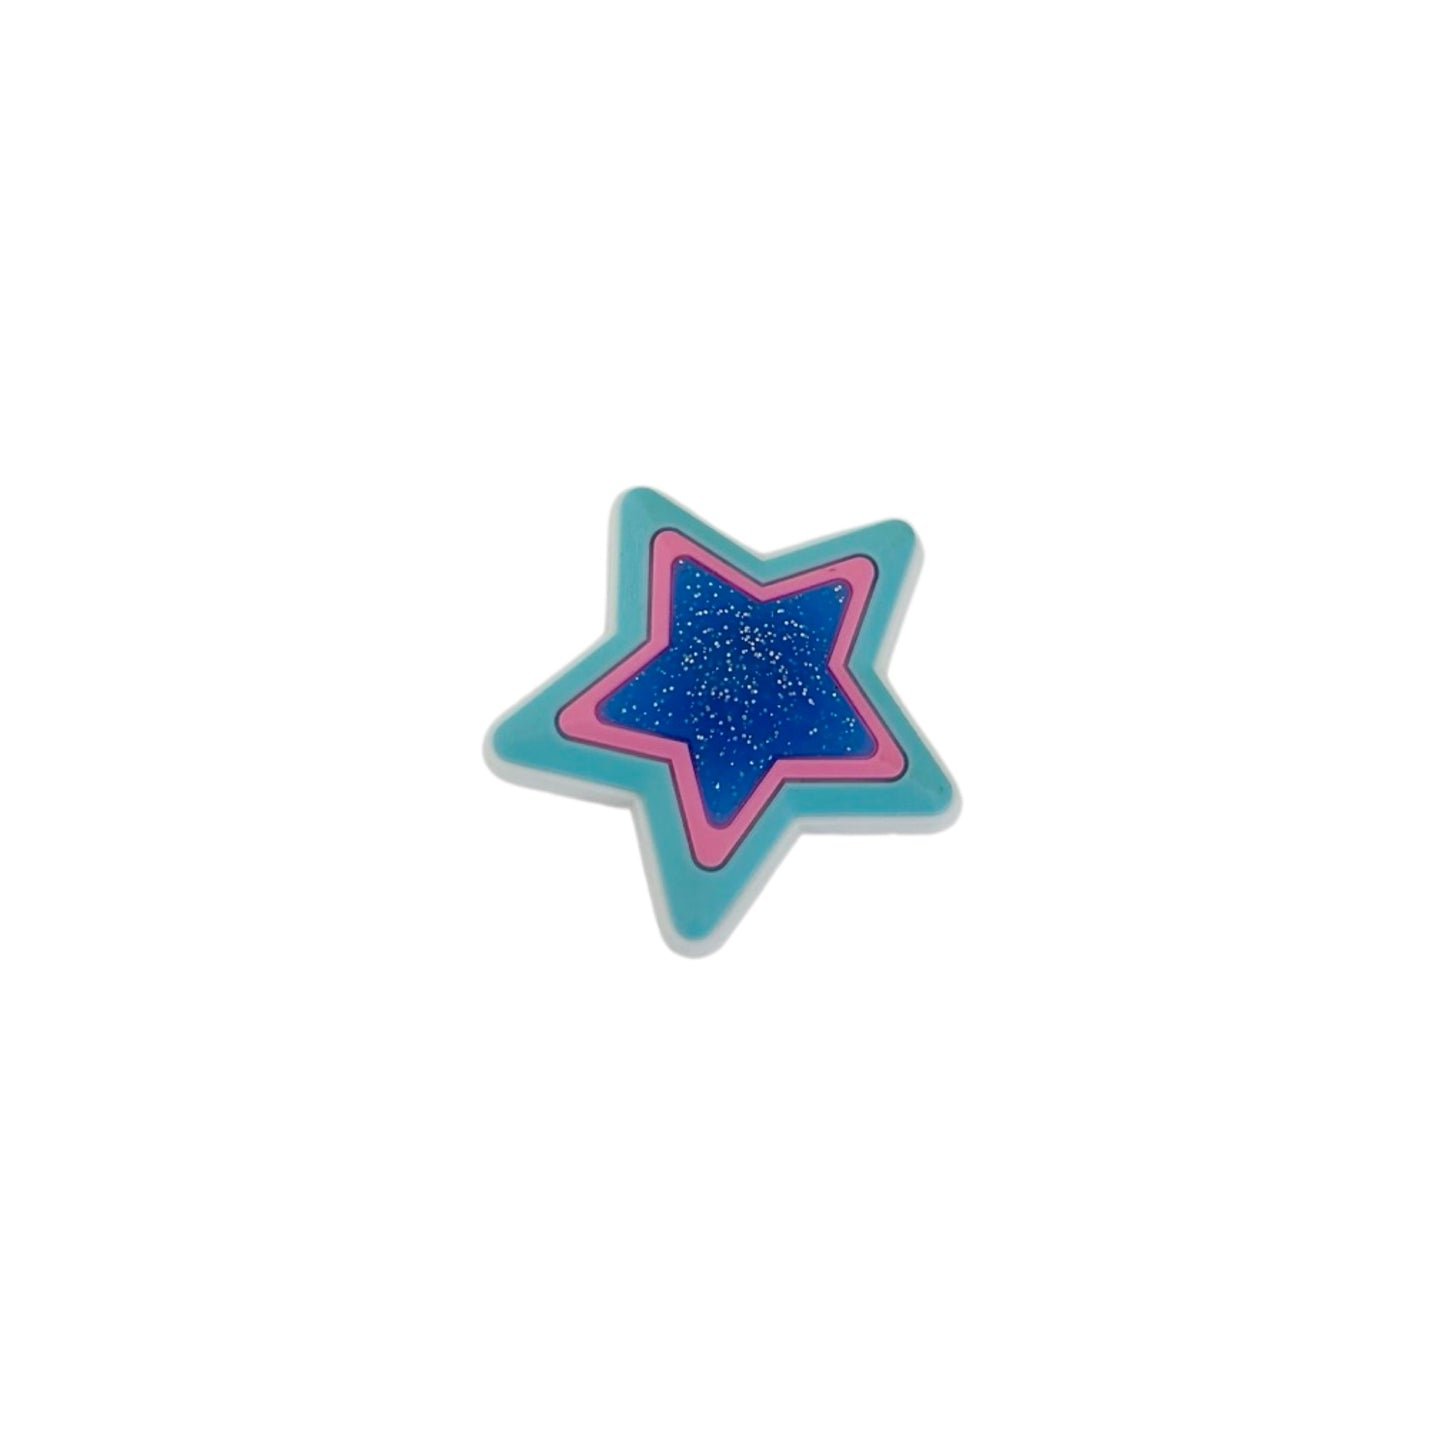 Bling Charm - GLITTER STAR BLUE